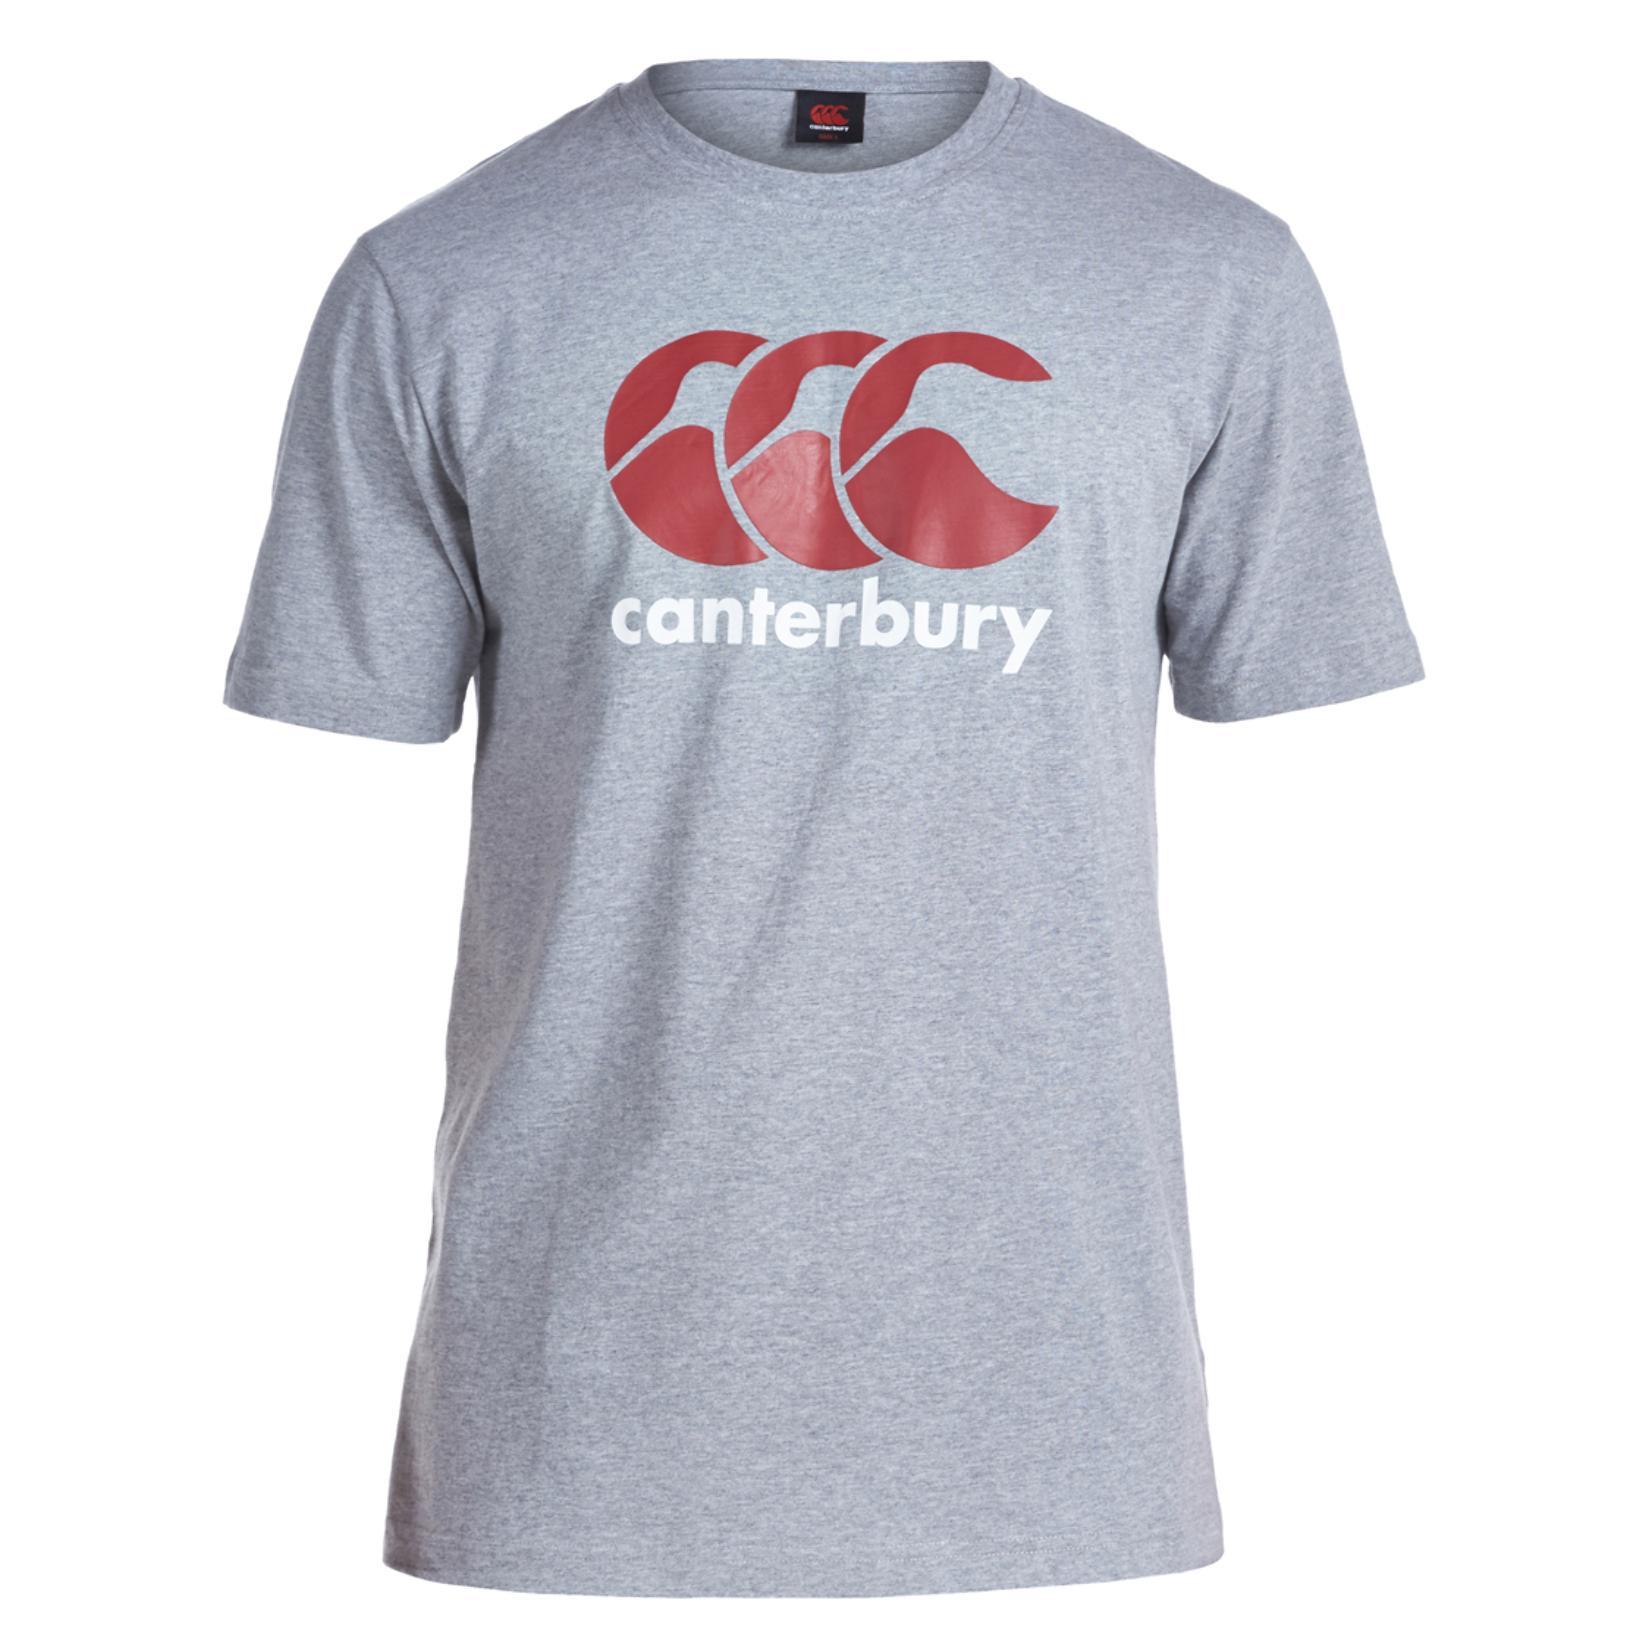 CCC Logo - Canterbury Team Ccc Logo T Shirt